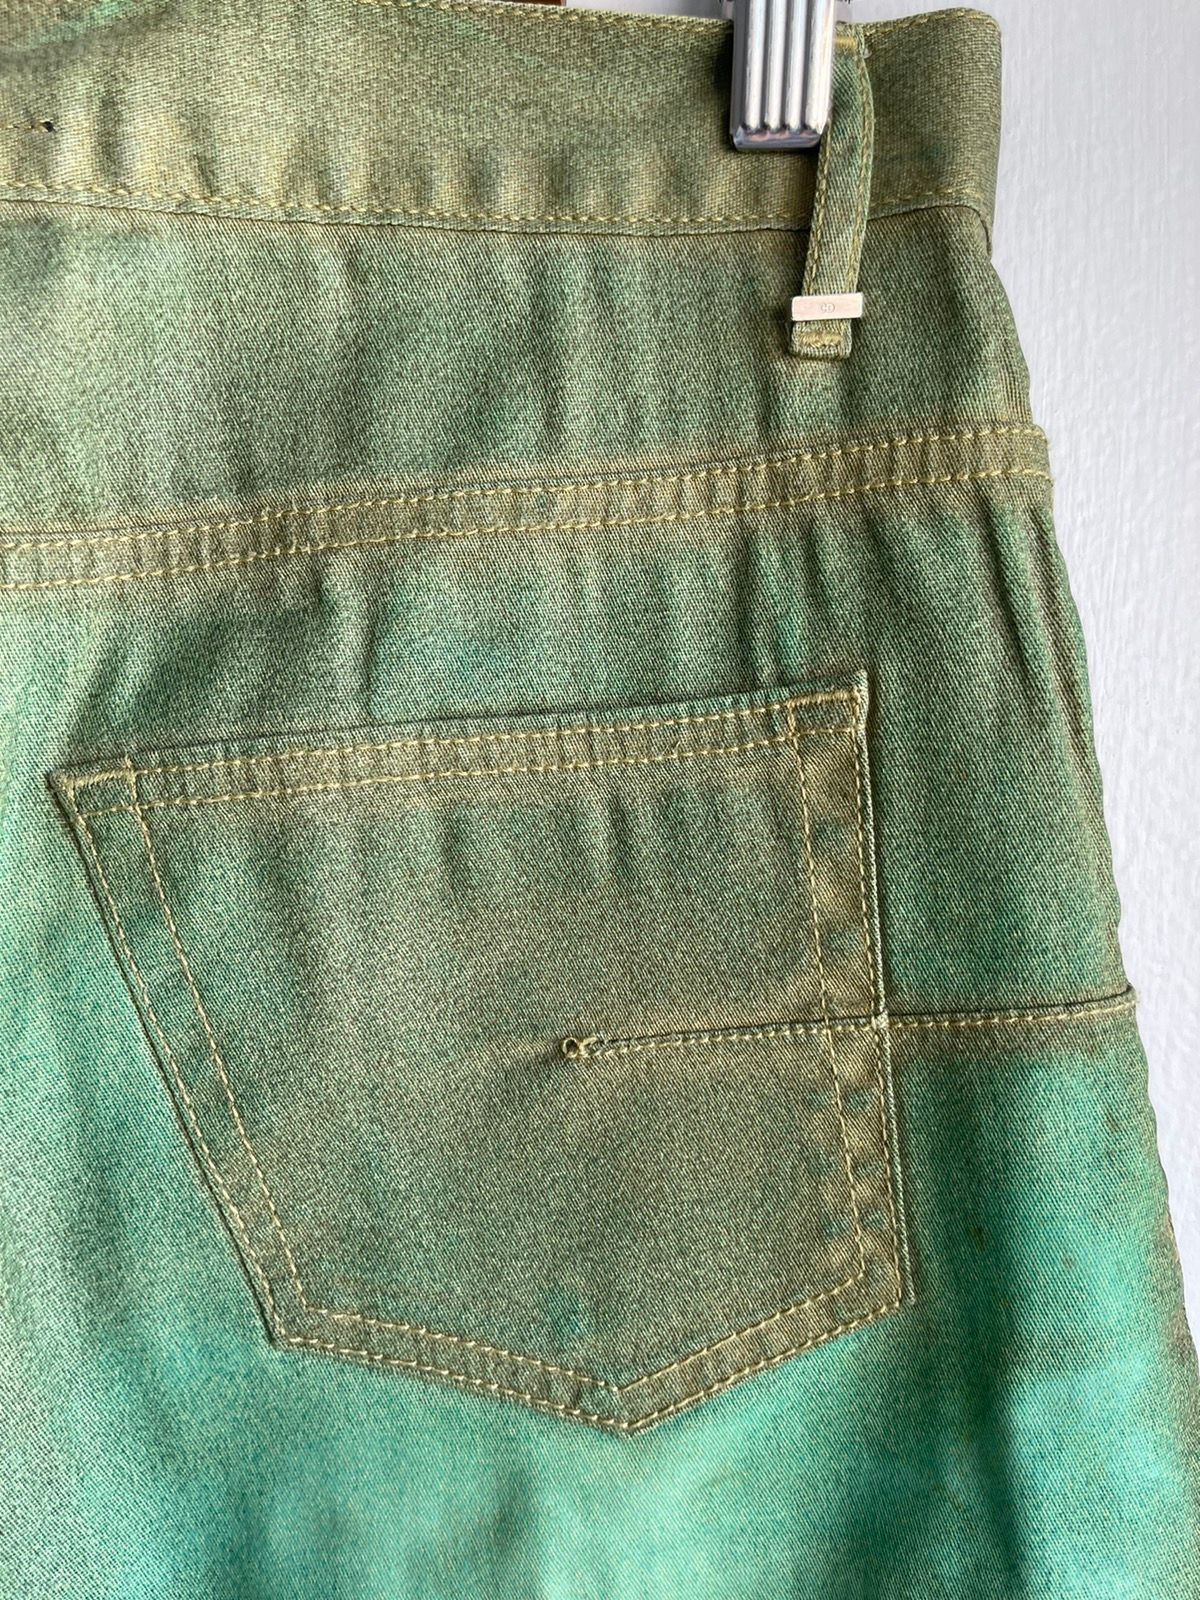 Dior Homme 06 1/1 Sample Green Denim Baked Jeans 28 29 30